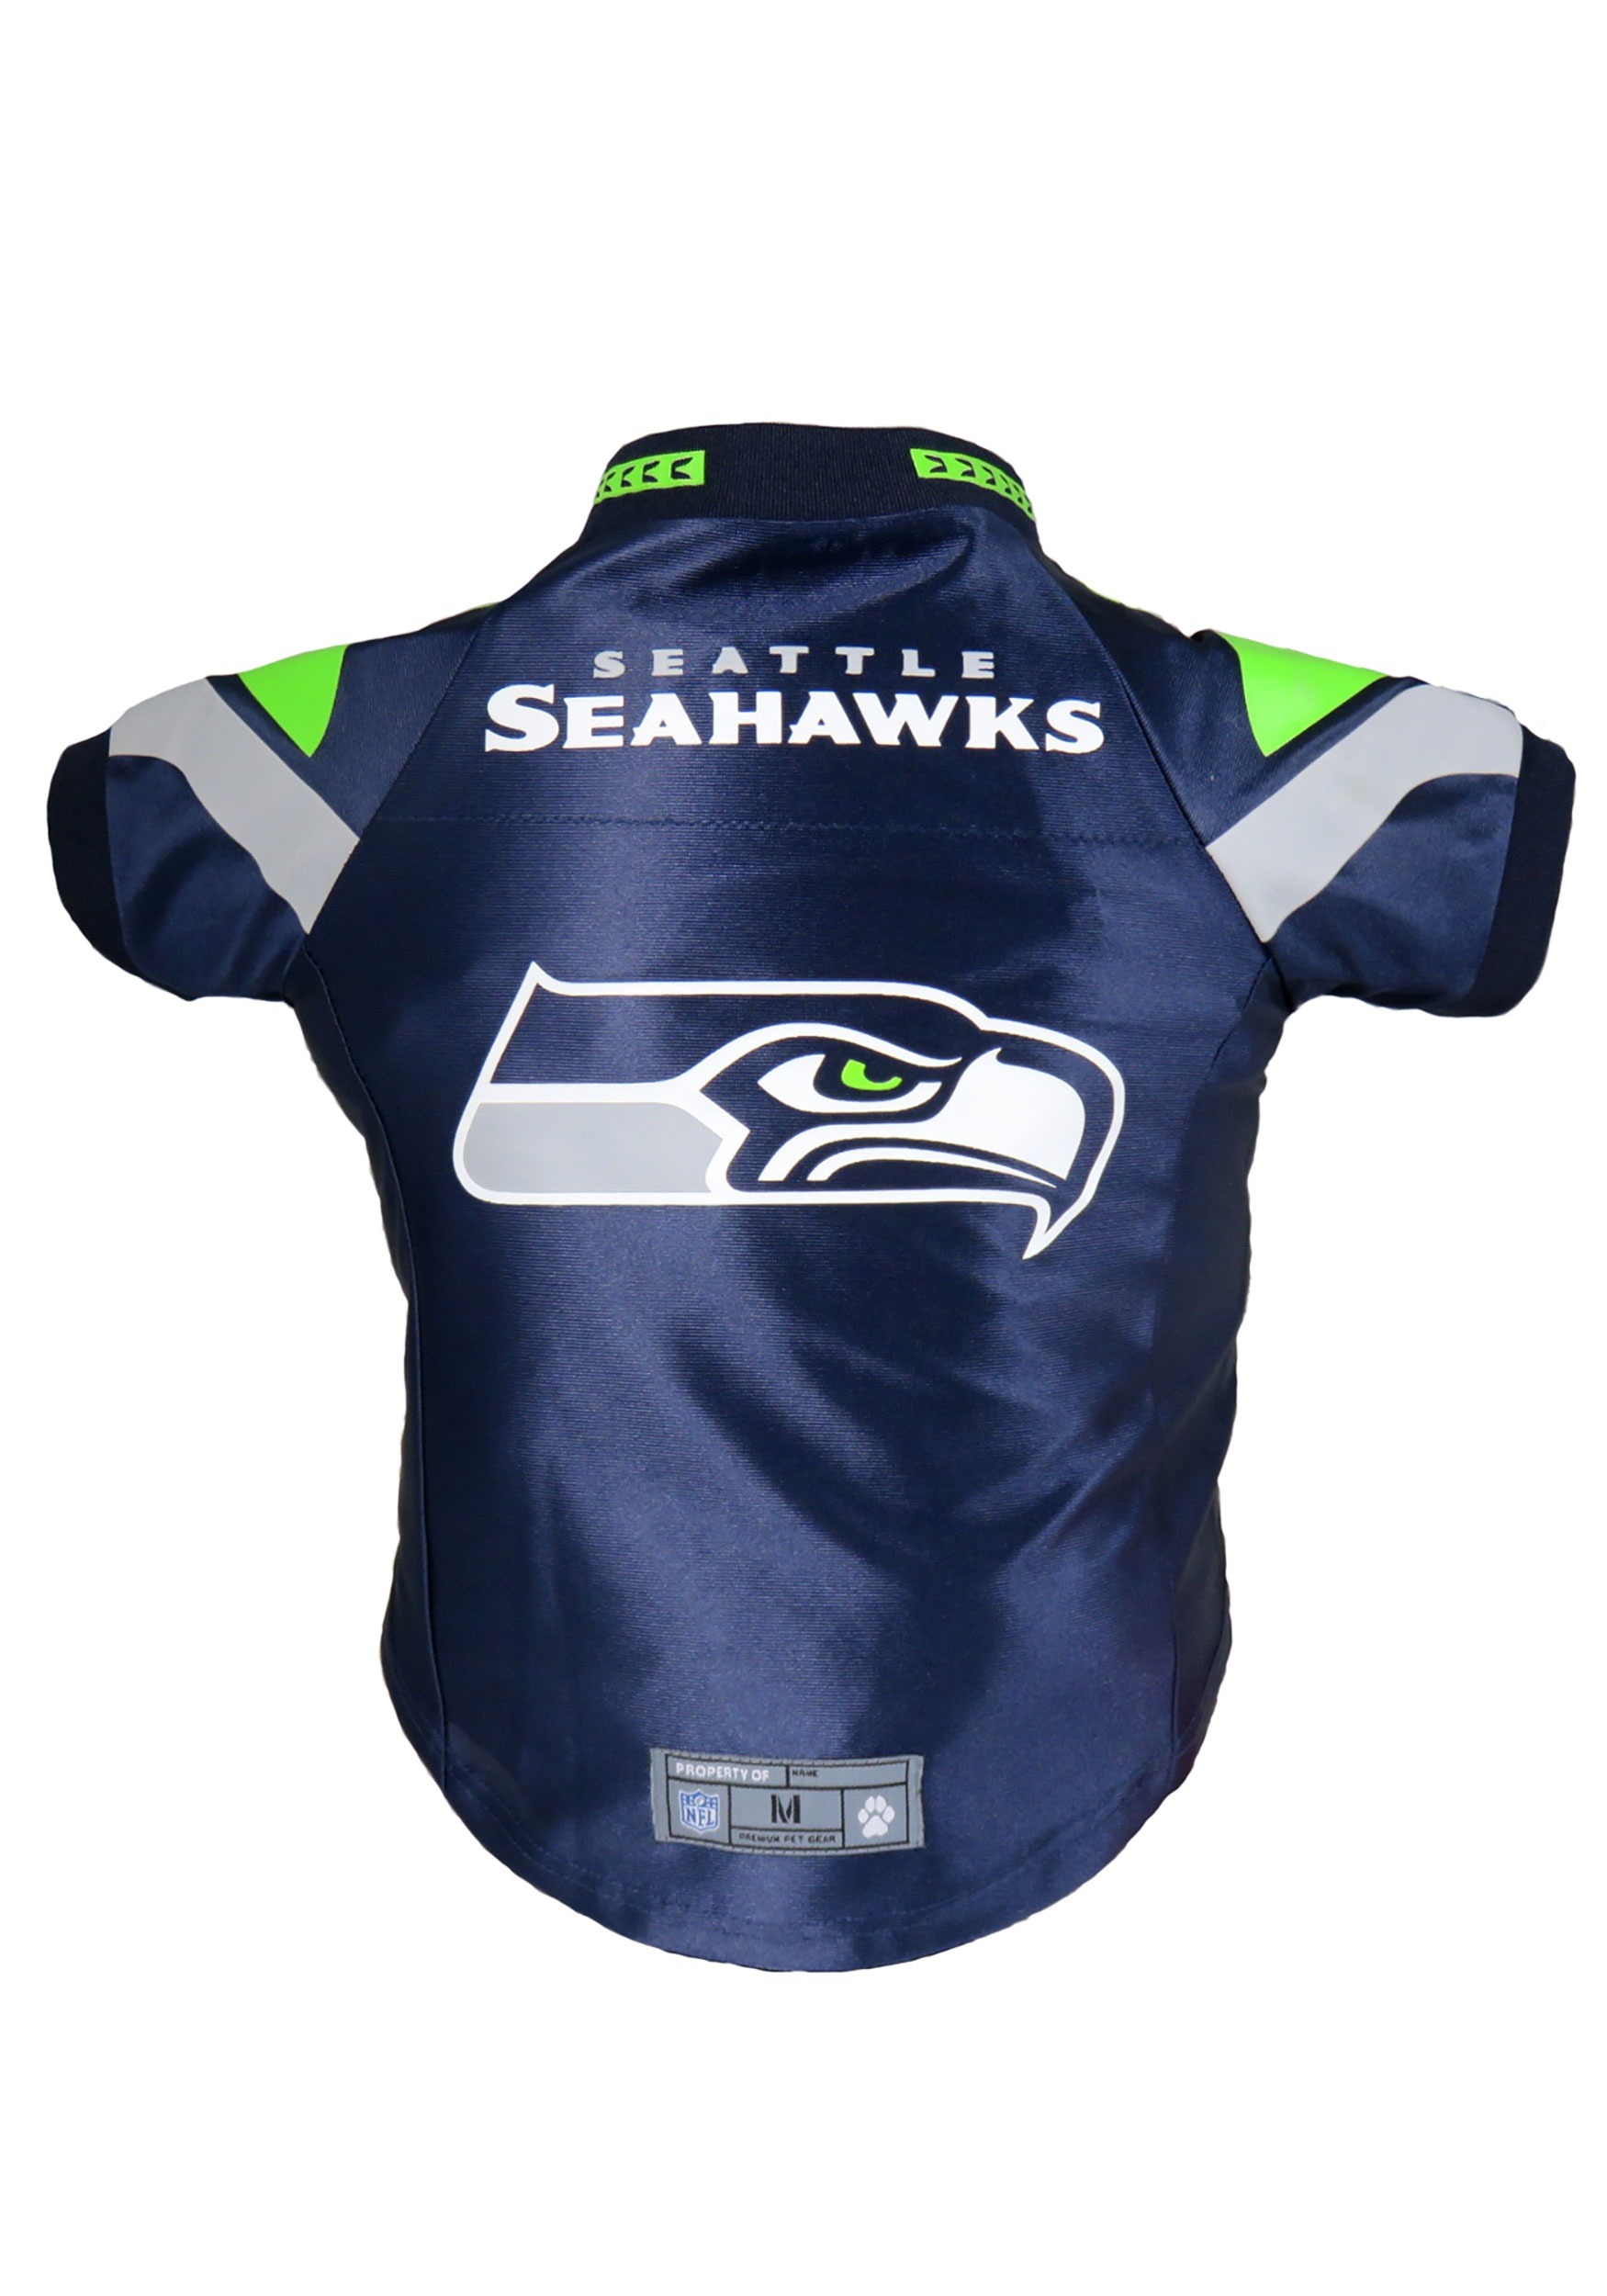 seattle seahawks jersey